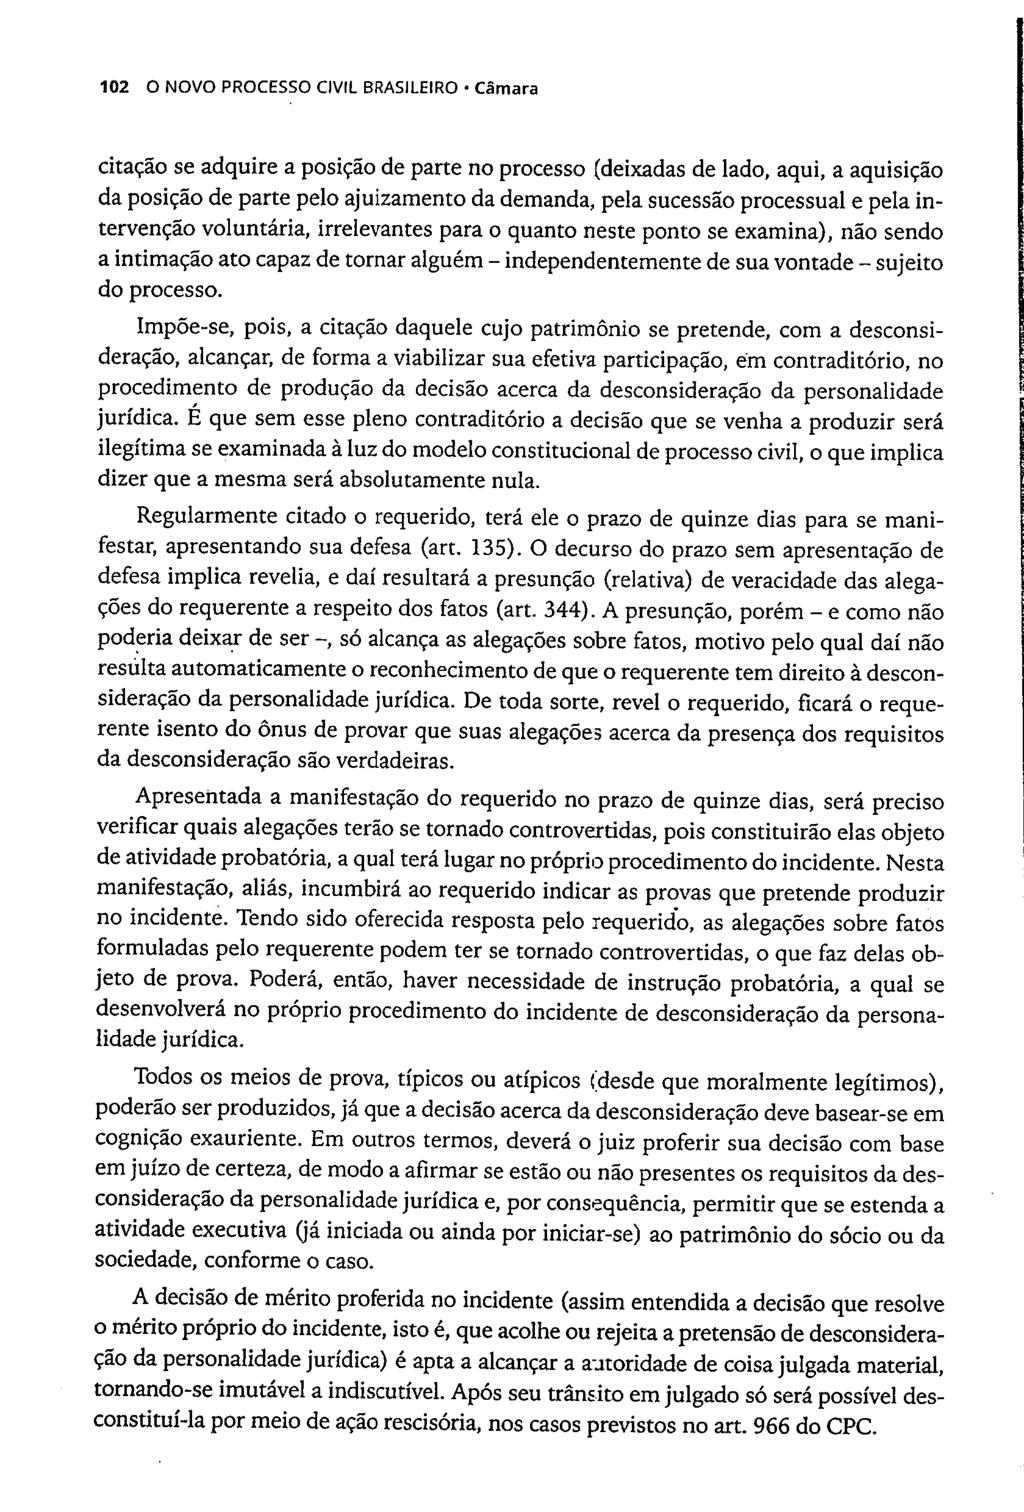 102 O NOVO PROCESSO CIVIL BRASILEIRO Câmara citação se adquire a posição de parte no processo (deixadas de lado, aqui, a aquisição da posição de parte pelo ajuizamento da demanda, pela sucessão